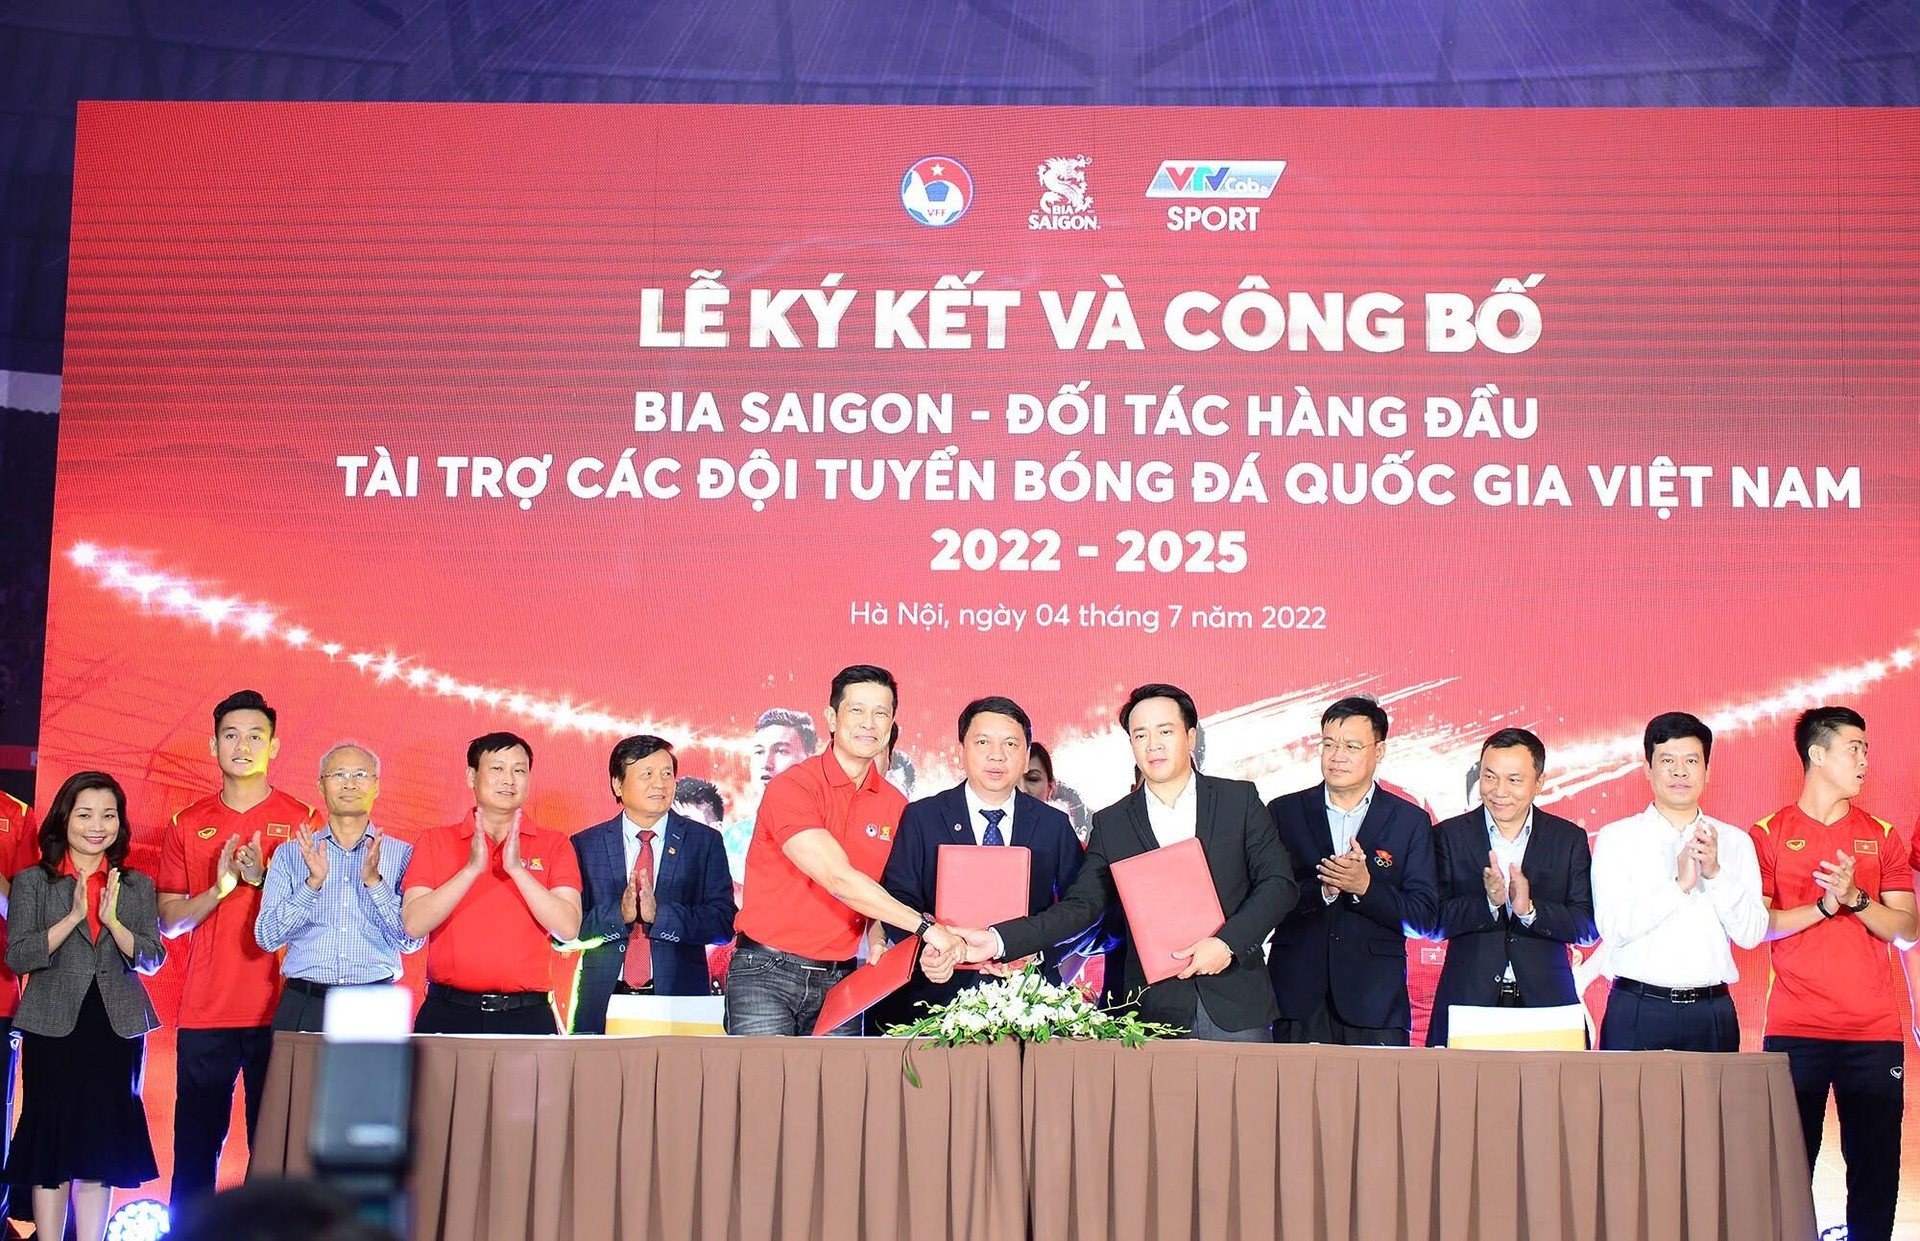 Các đội tuyển bóng đá Việt Nam nhận thêm tài trợ lớn - 1